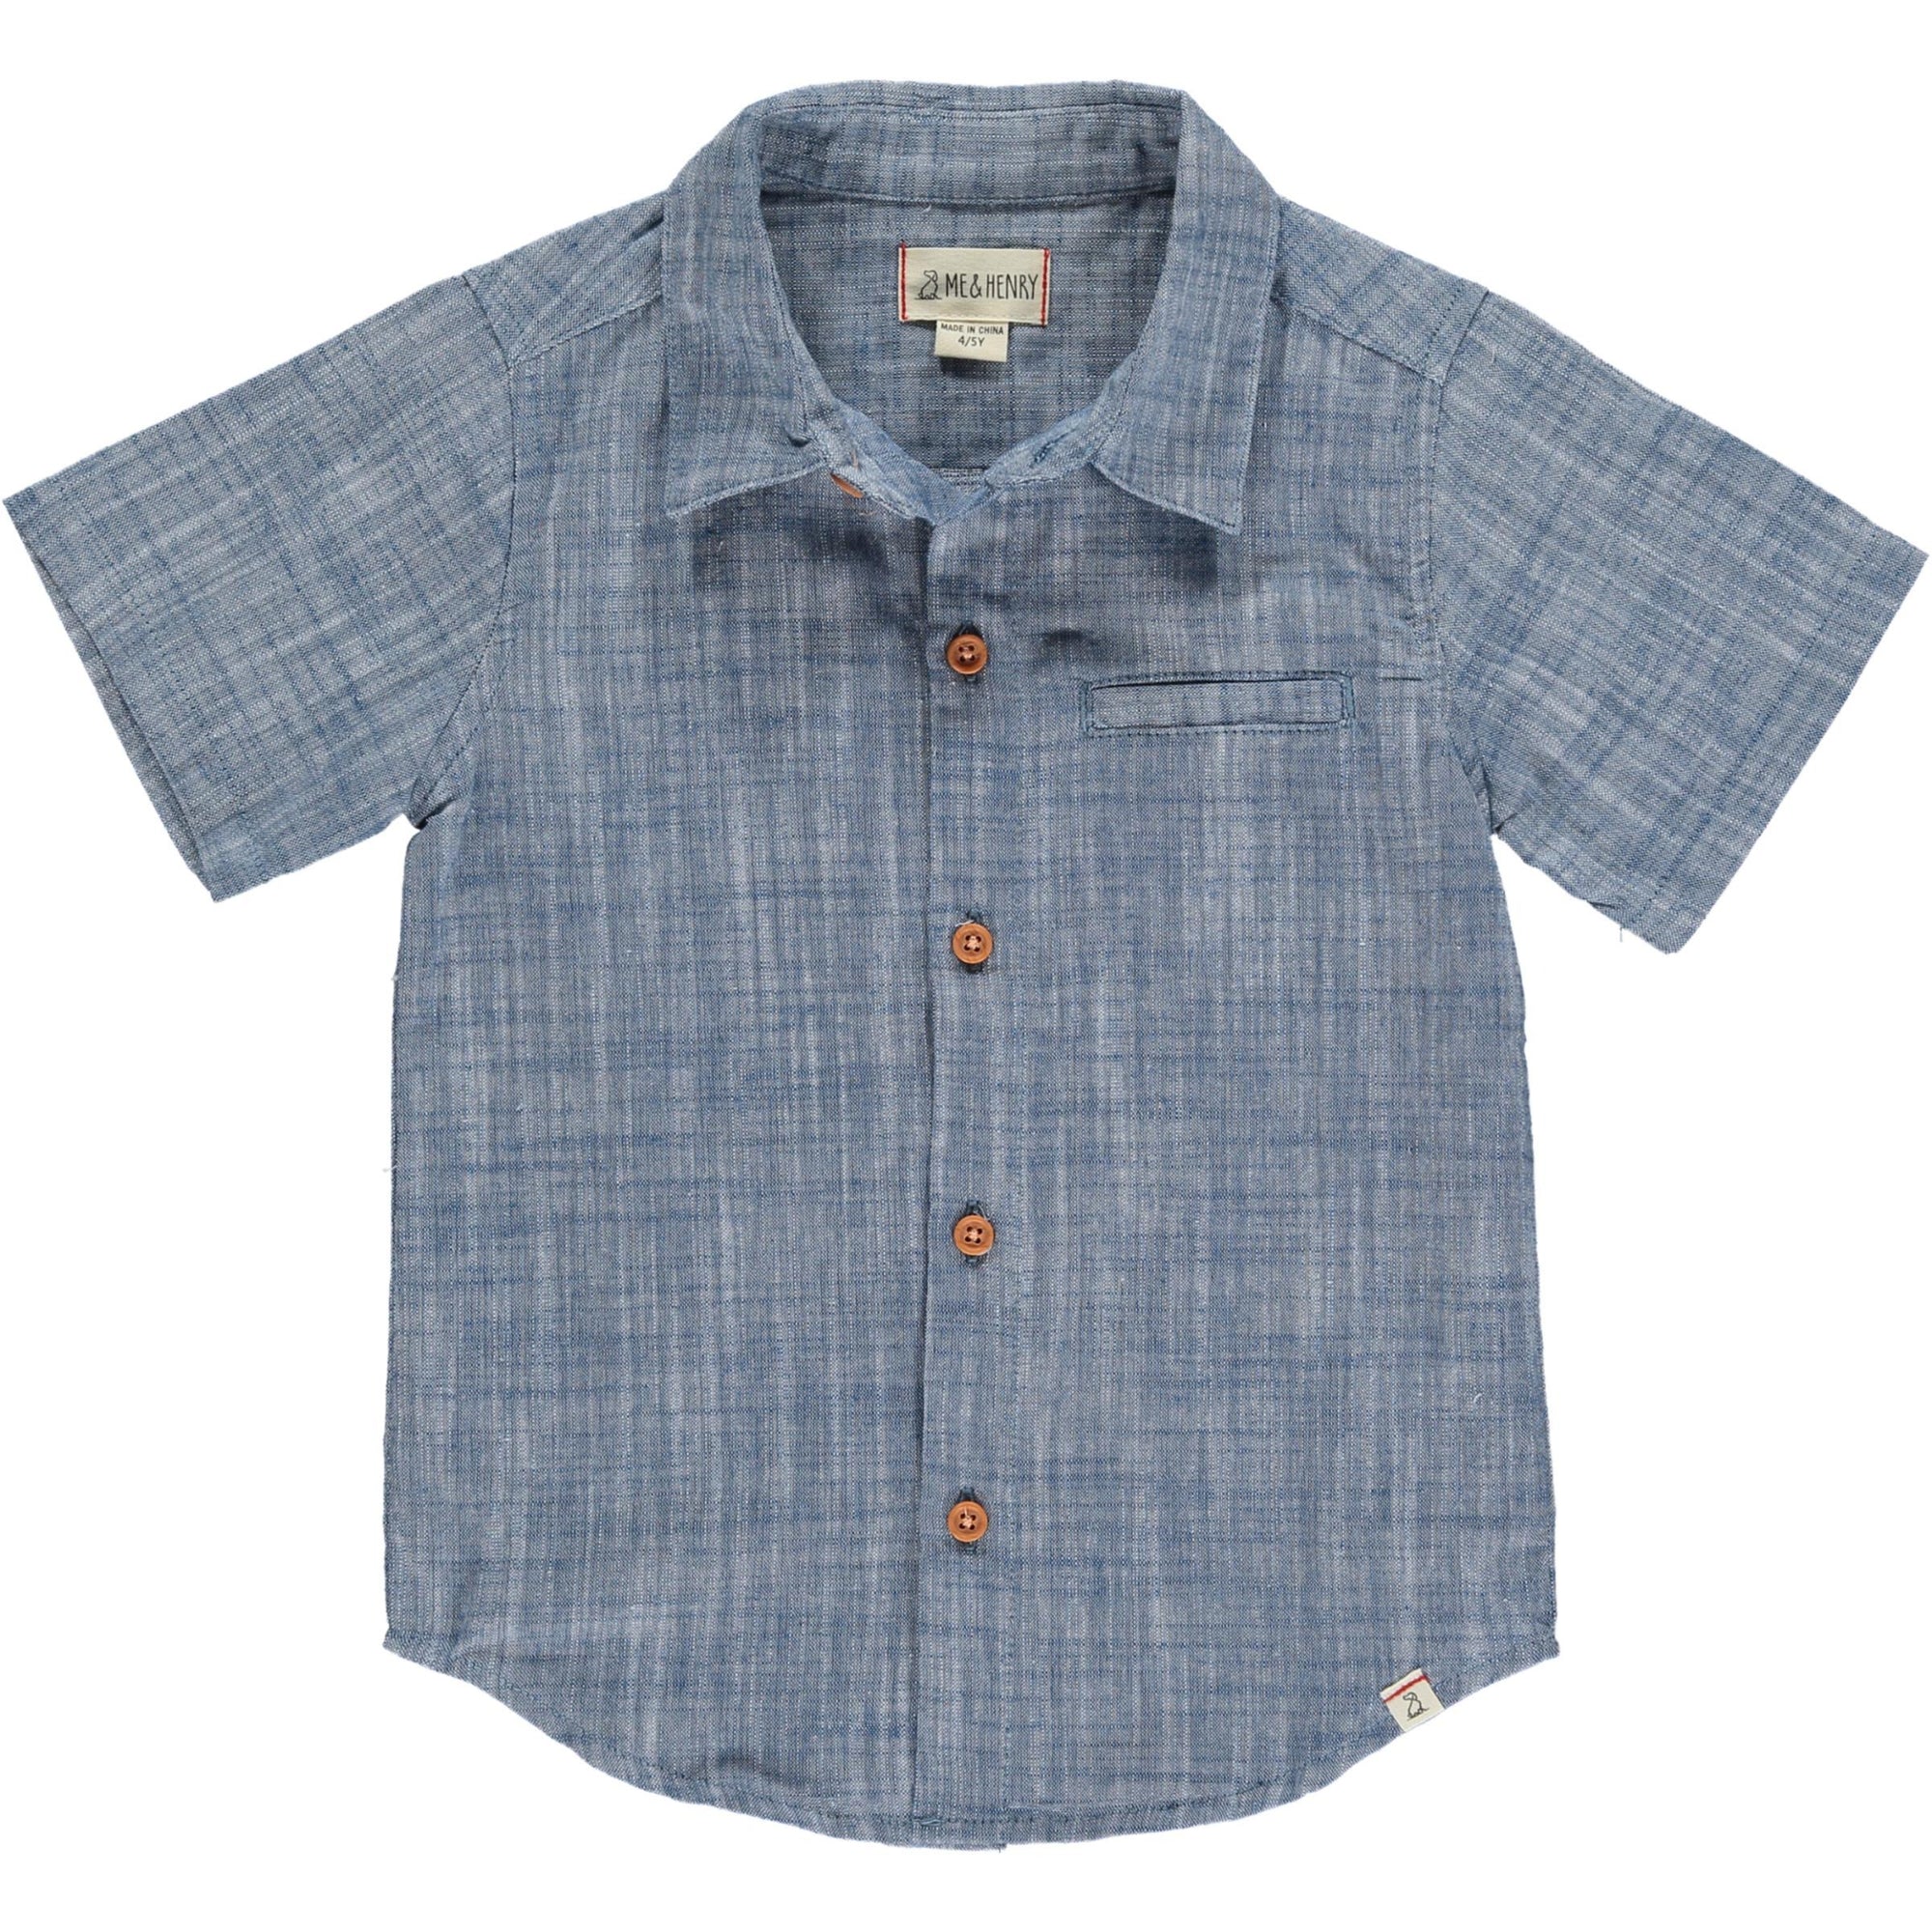 Newport Woven Button Up Shirt / Blue Heathered